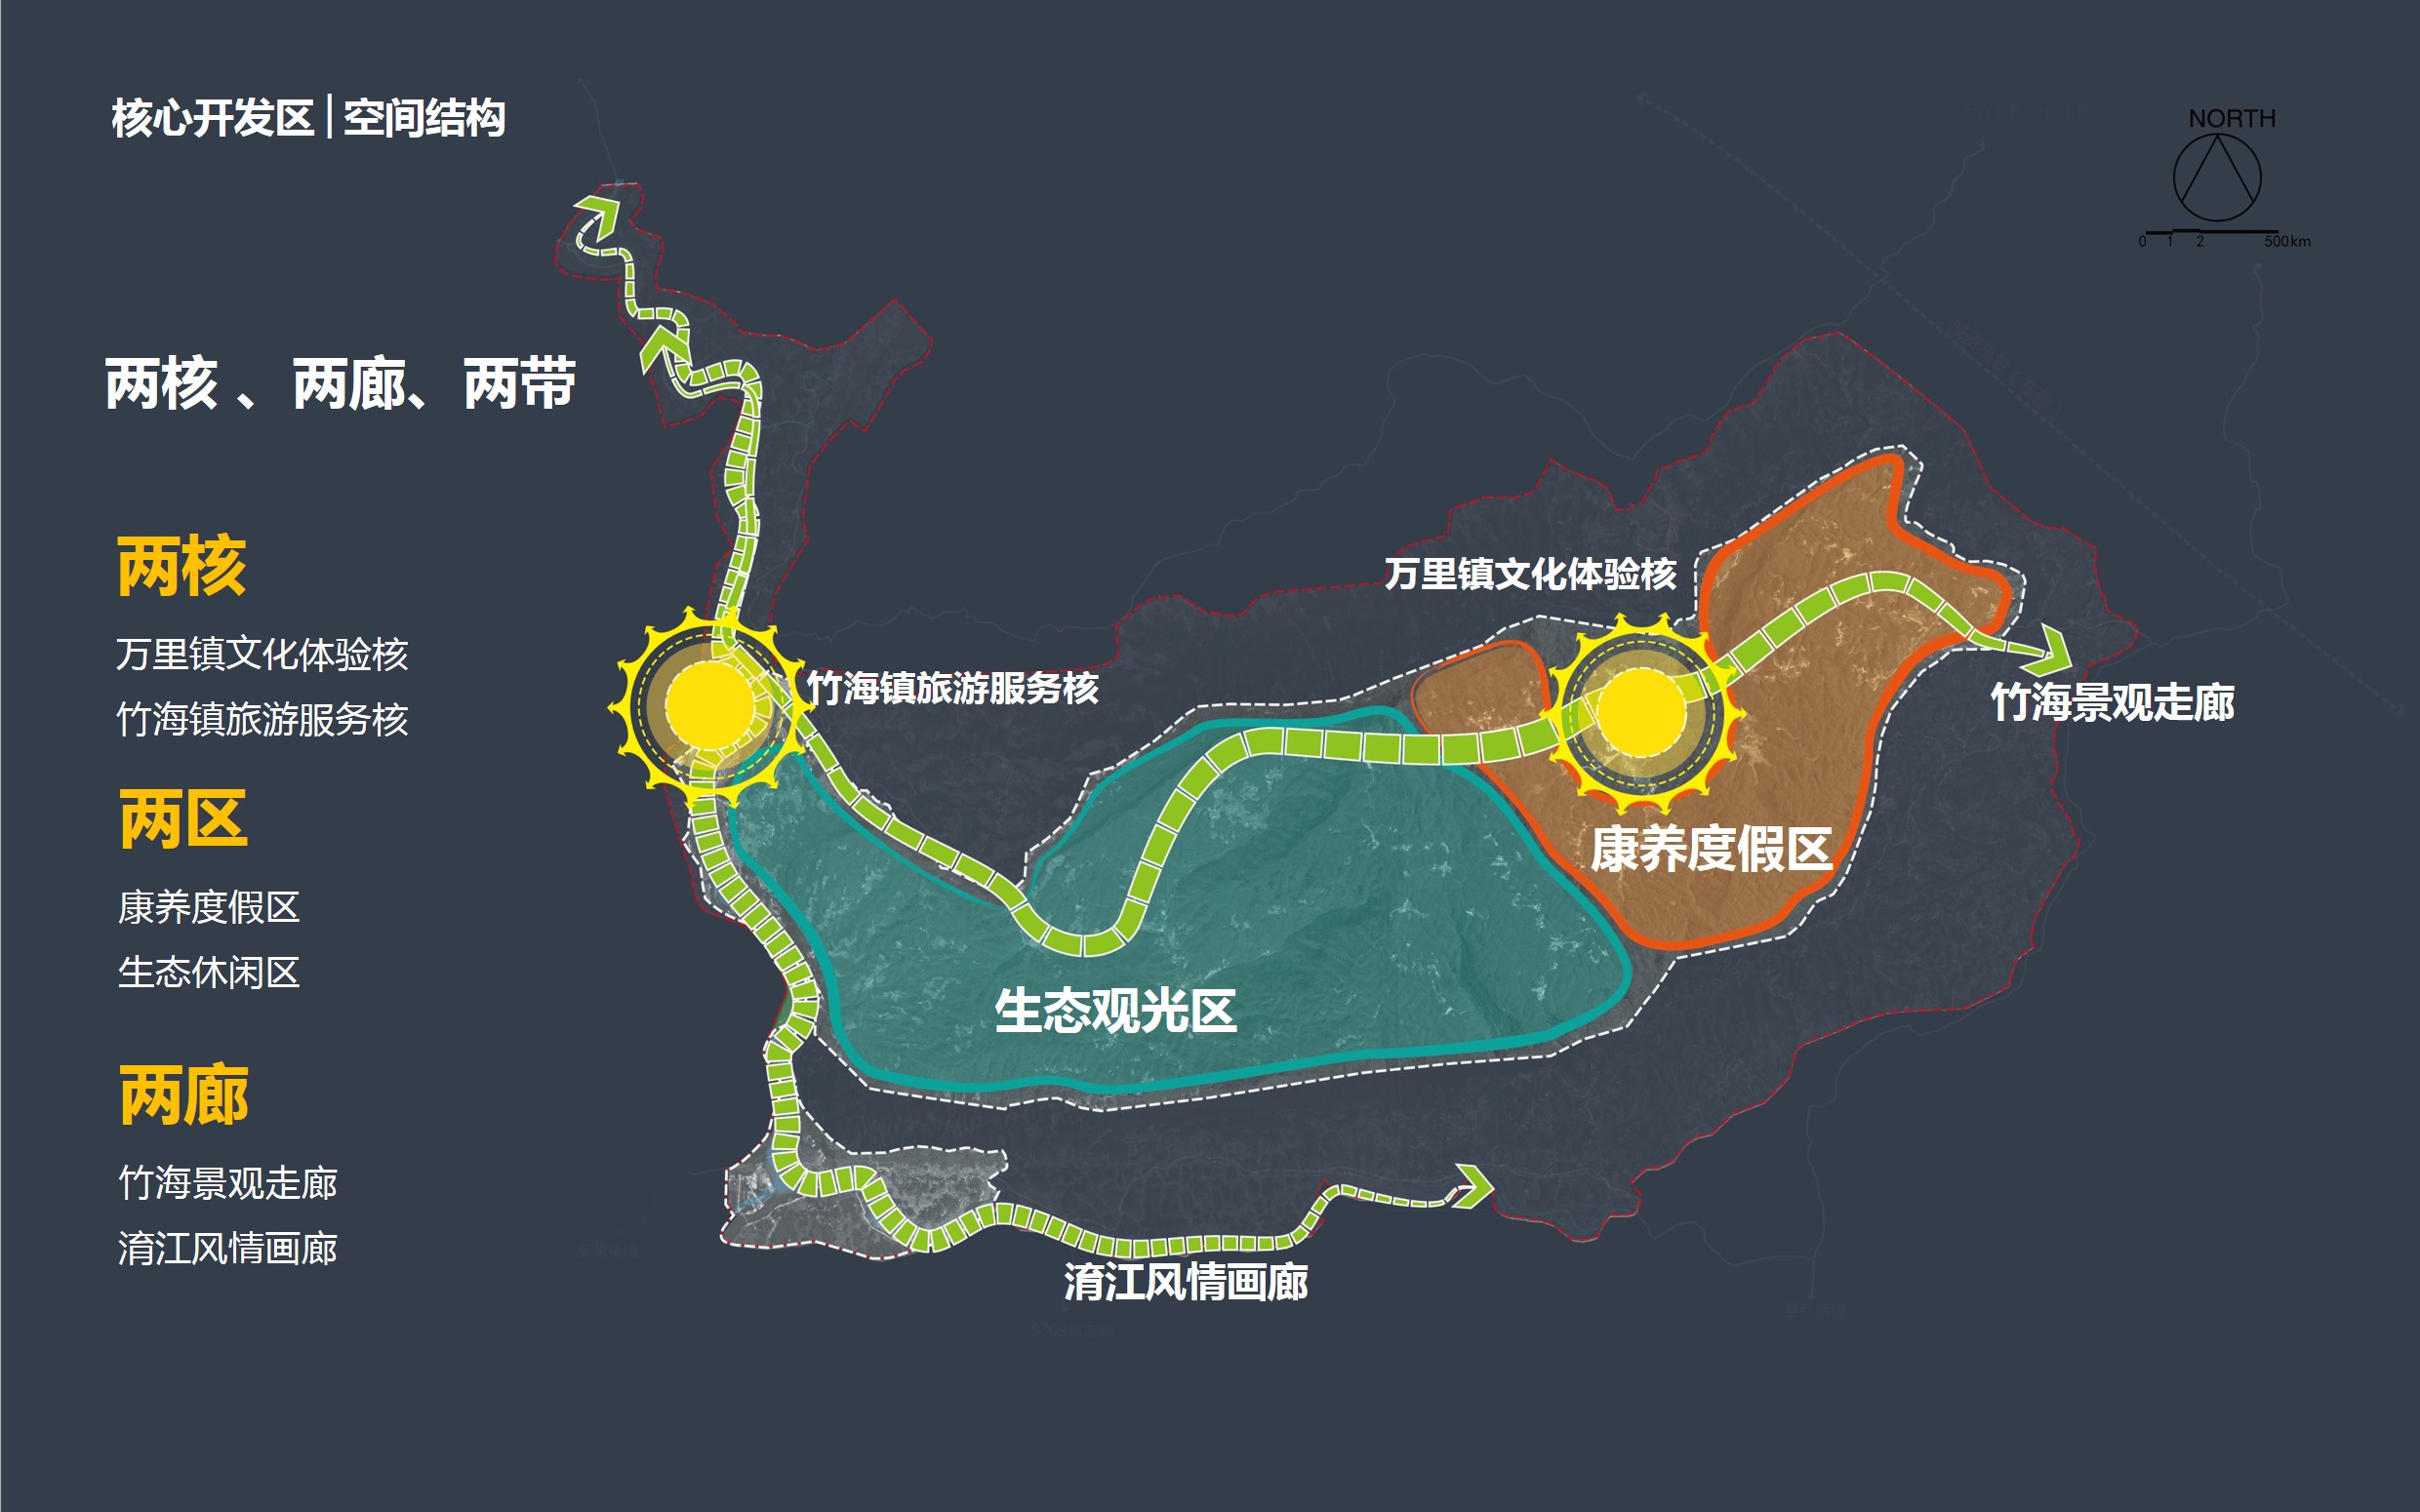 蜀南竹海风景名胜区旅游总体策划项目